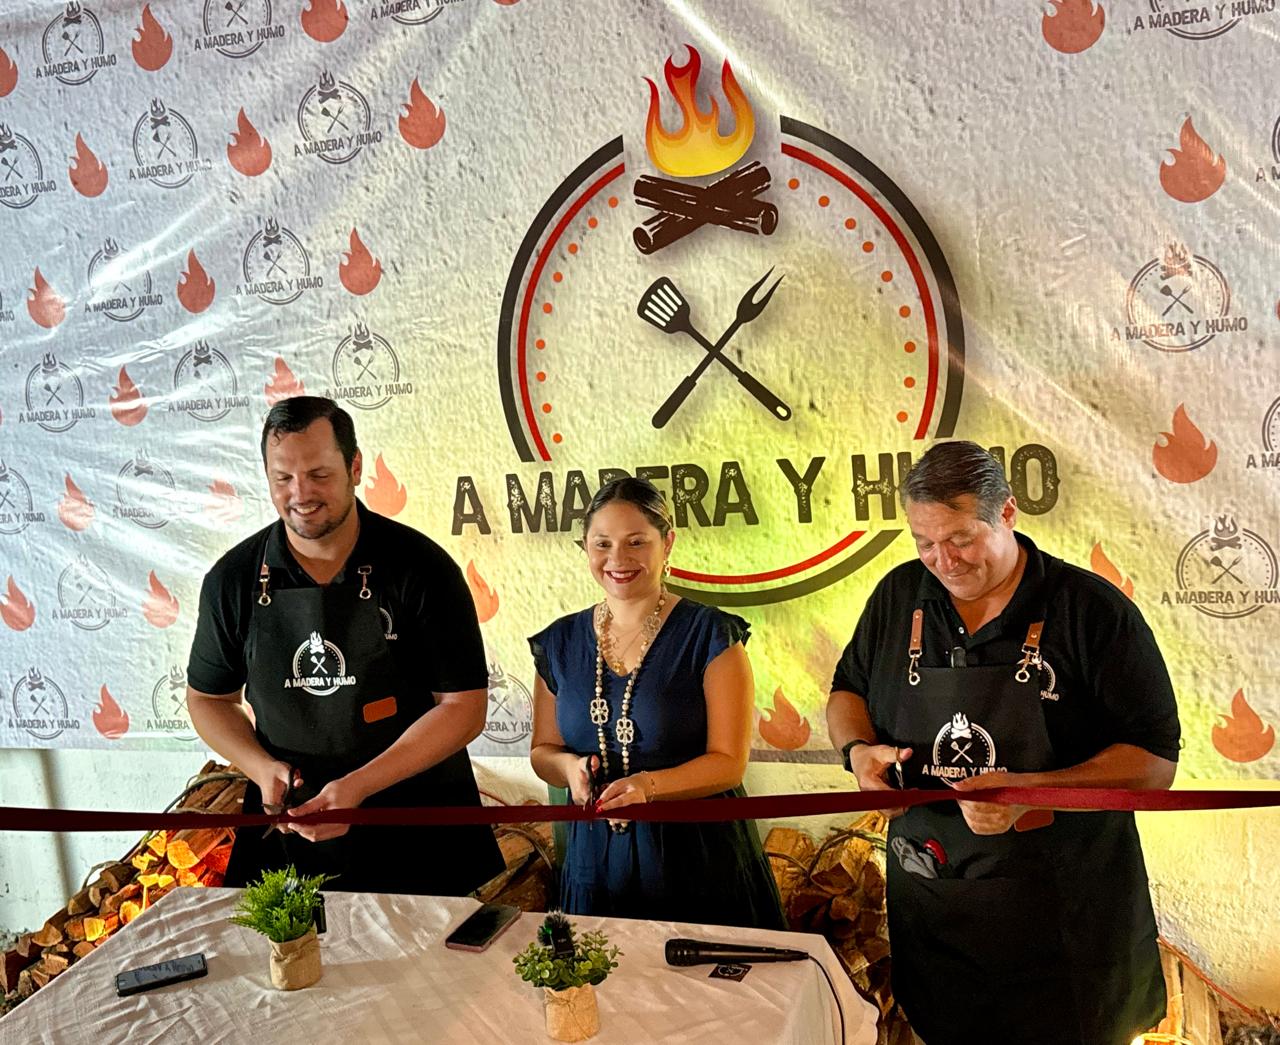 A Madera y Humo reinaugura su concepto BBQ texano que cautivará los paladares